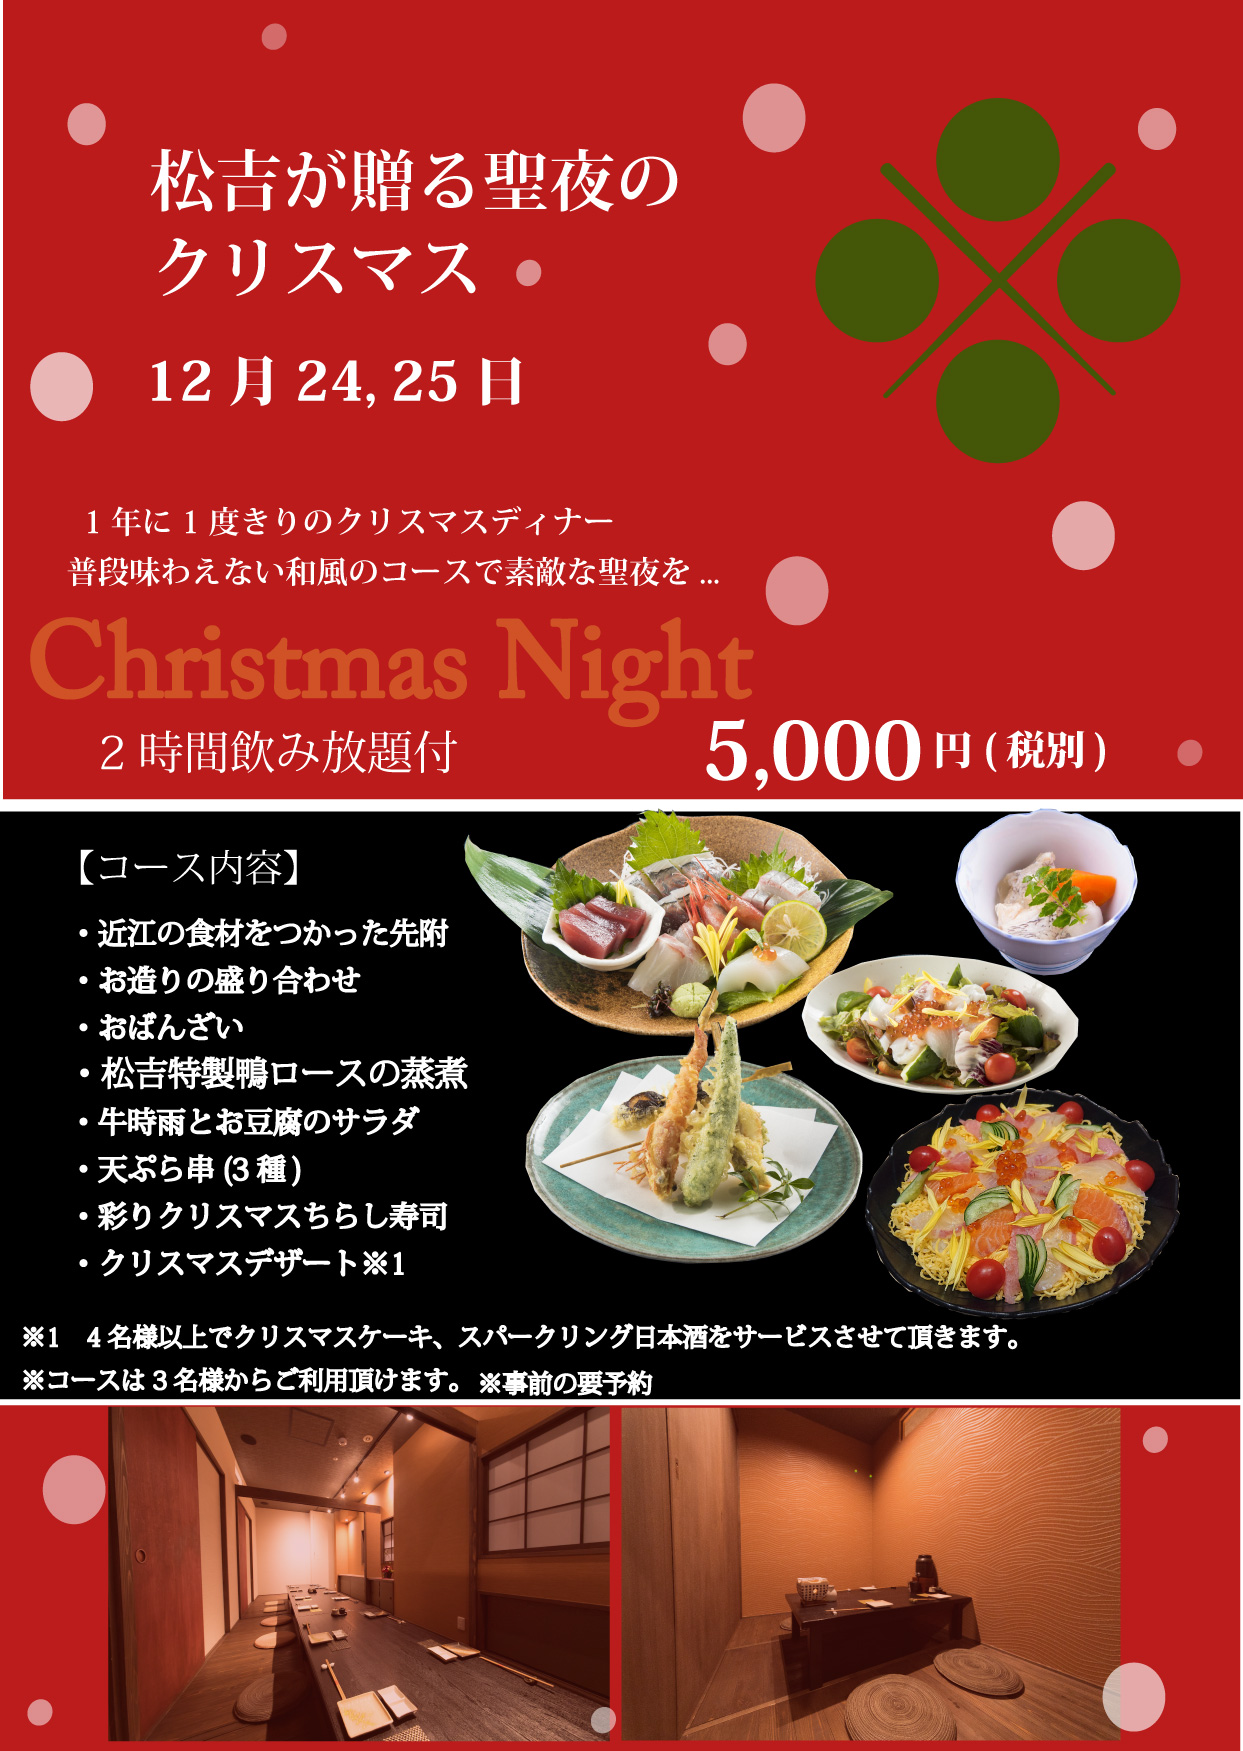 Matsukichi Christmas dinner